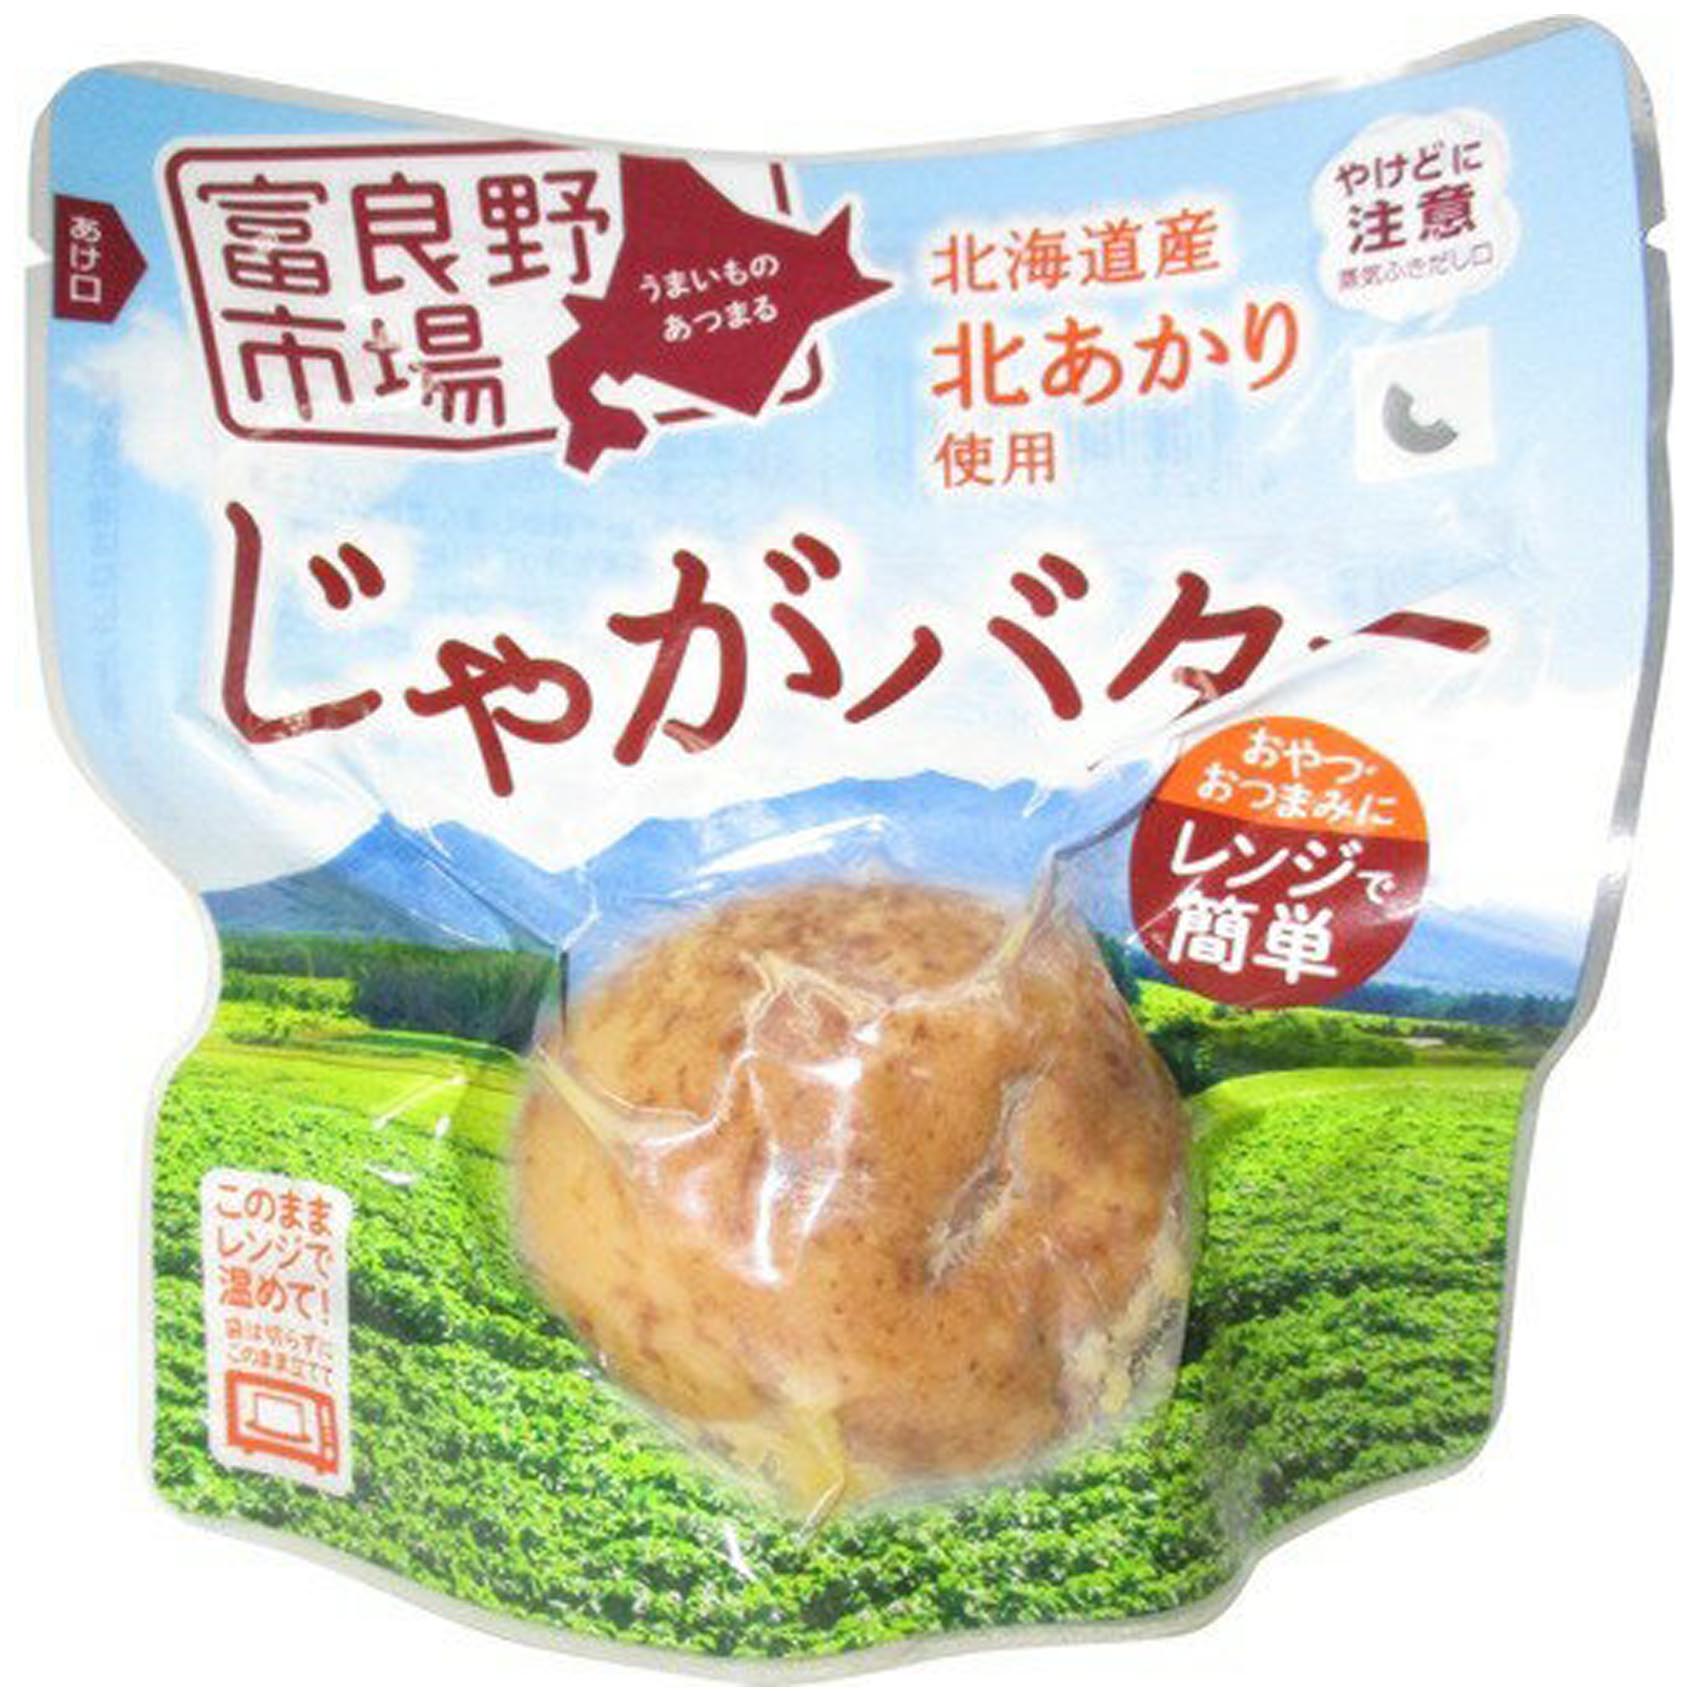 メルカート間渕 Online Shop / 富良野市場 北あかりじゃがバター 1個